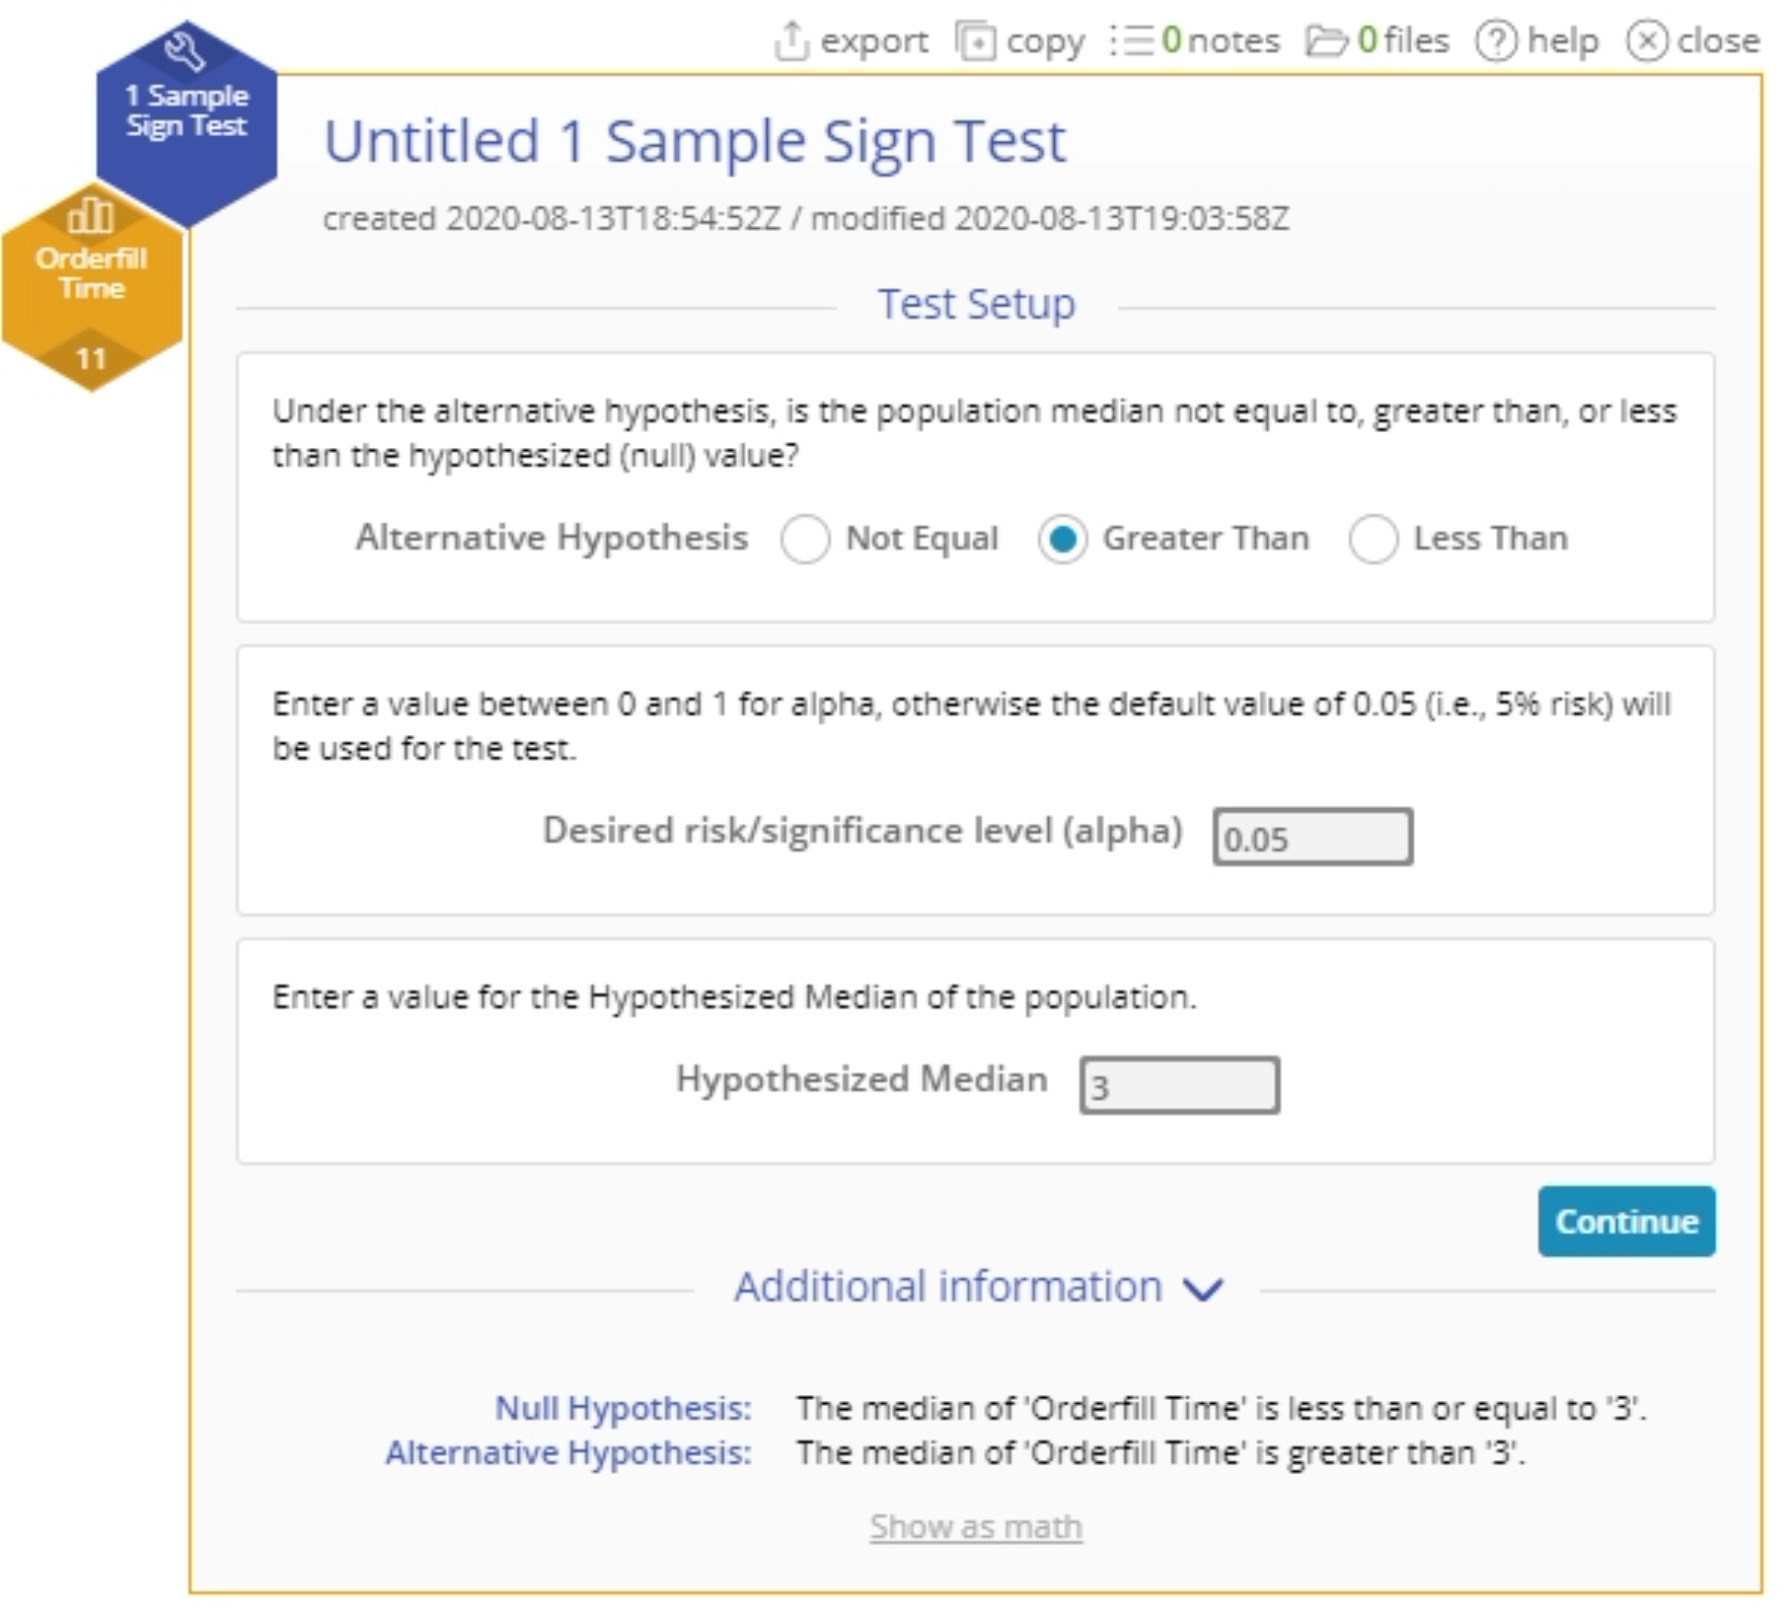 Start up menu for sample sign test.